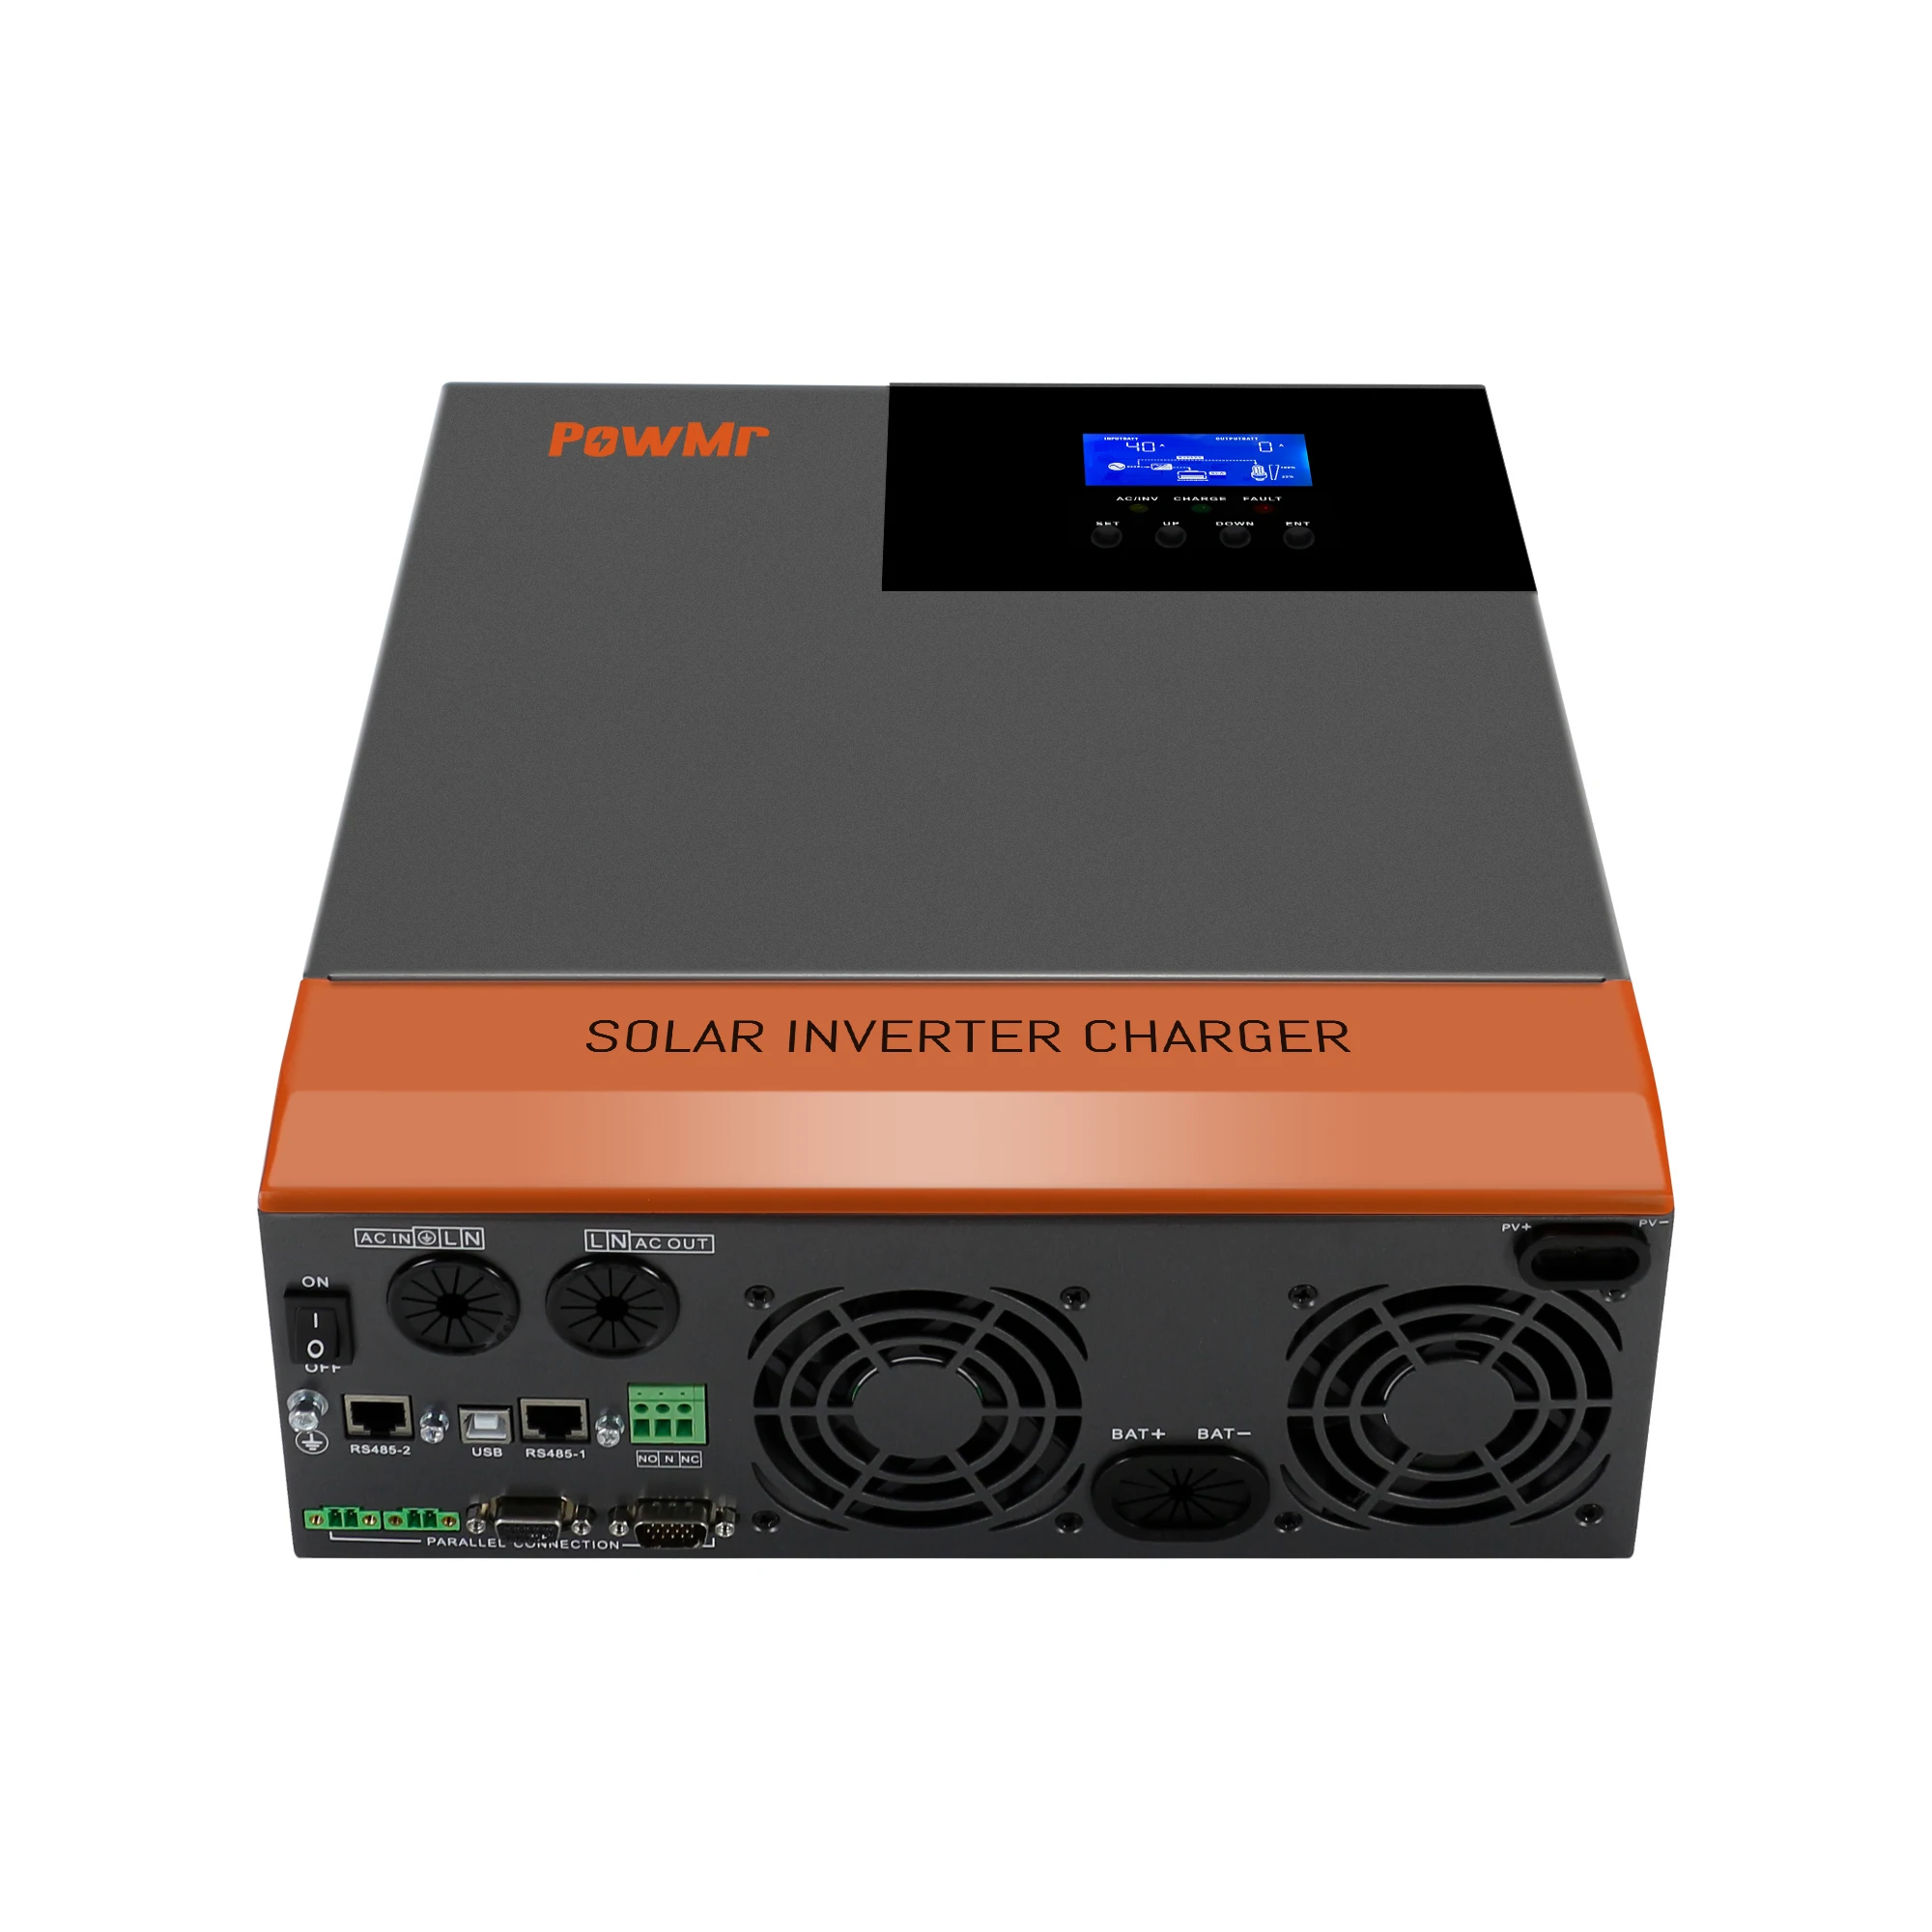 MPP Solar, Split Phase LV 2424, Solar Inverter Datasheet